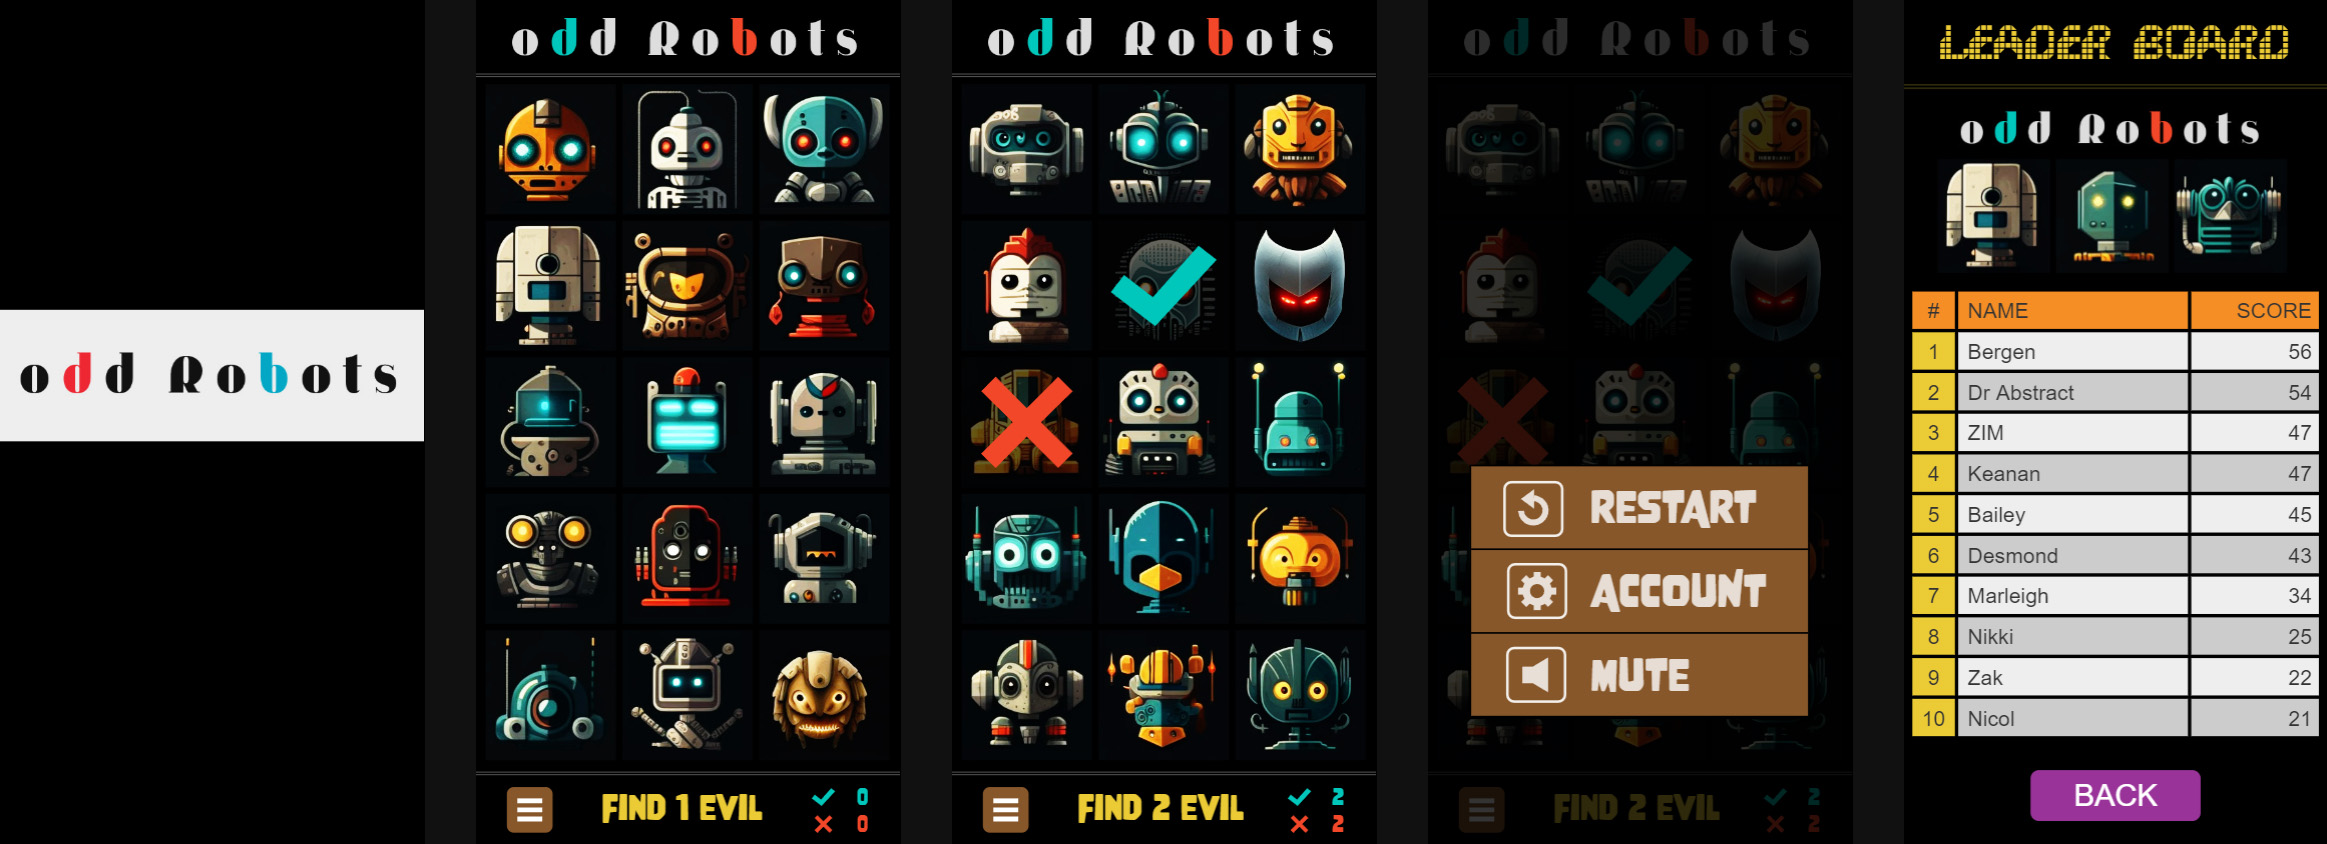 oddrobots2